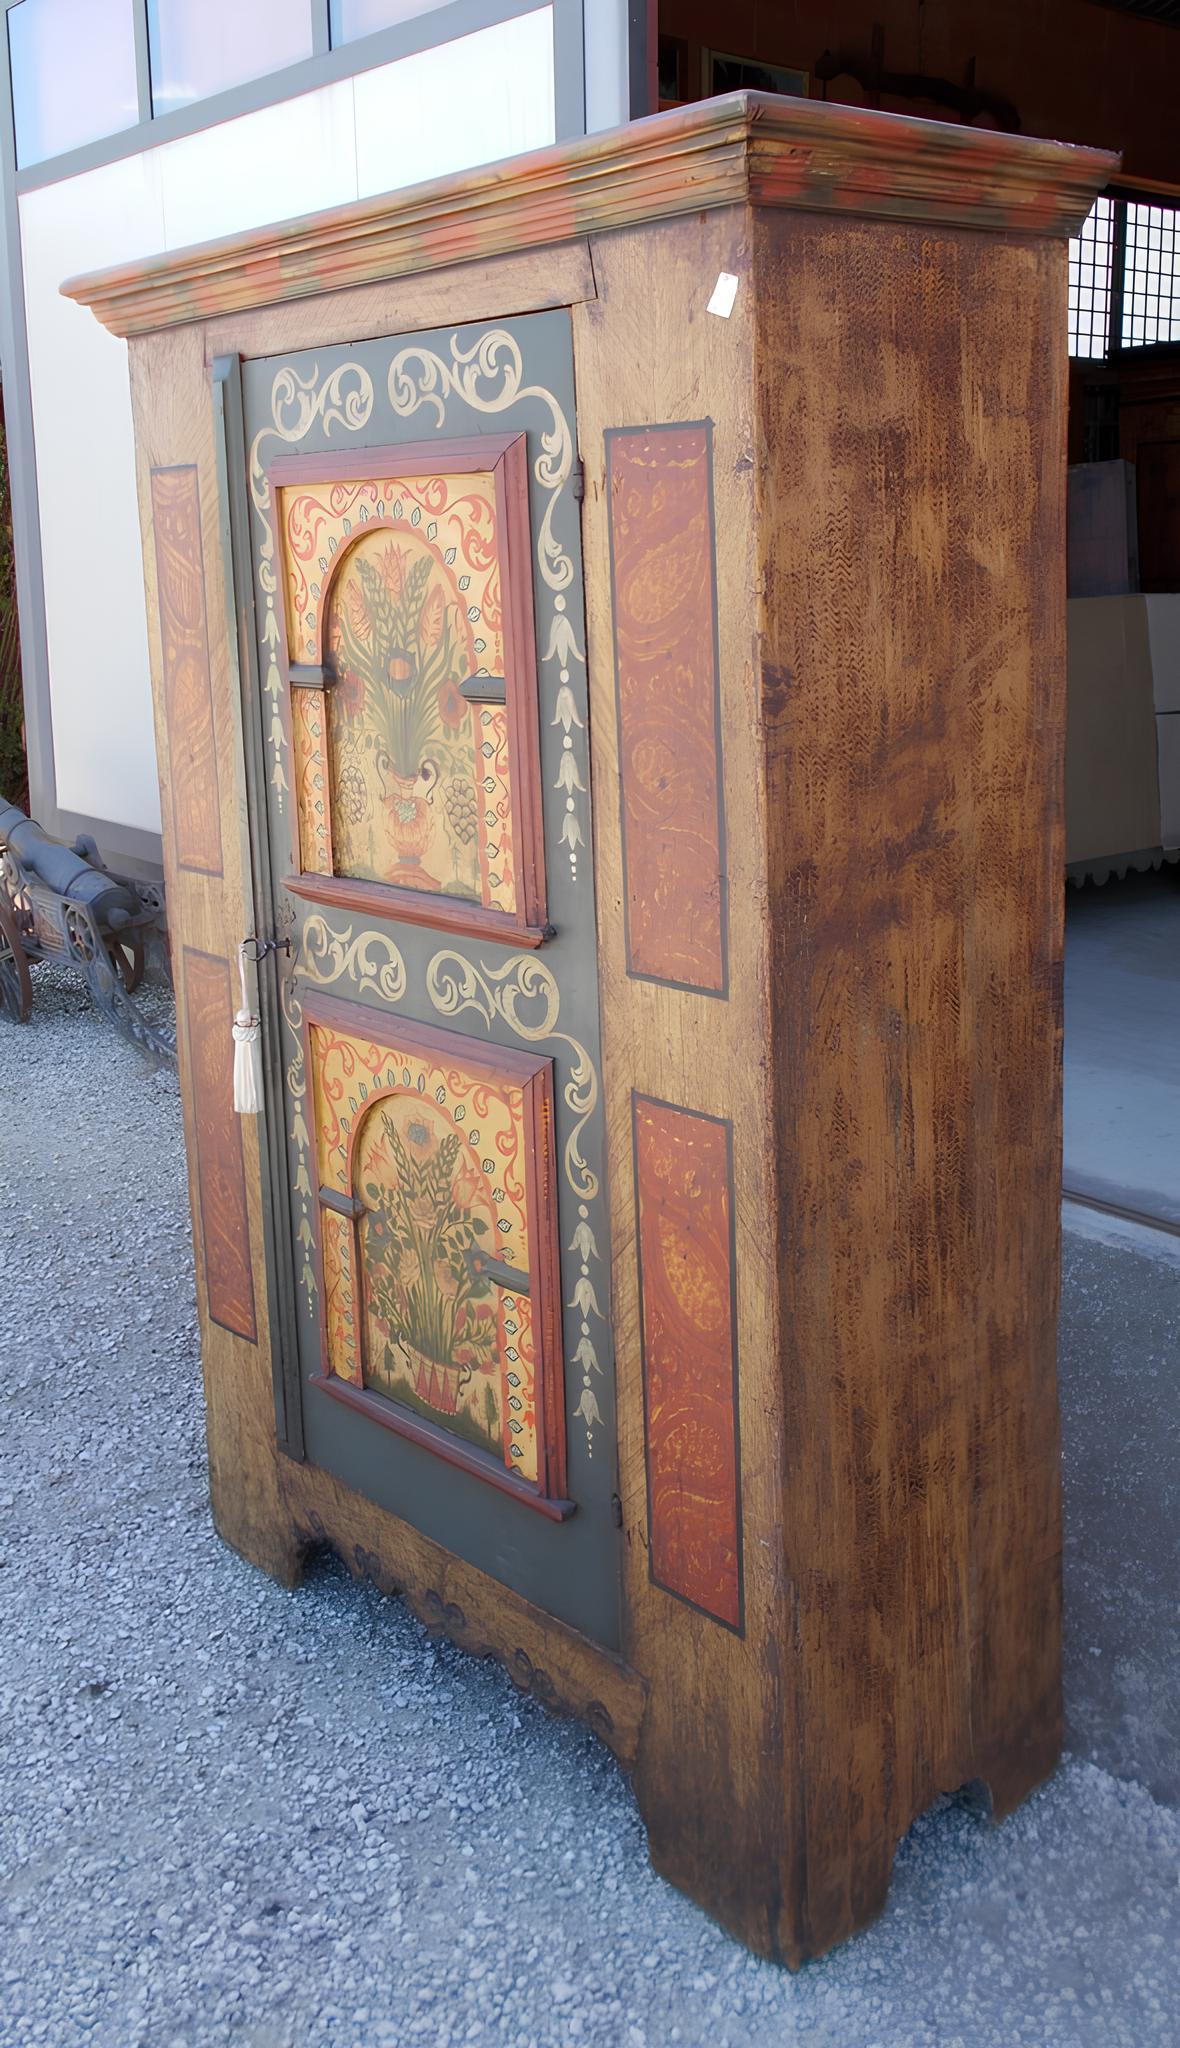 Petite armoire en bois de sapin, avec porte finement peinte en relief.

Charnières d'origine de l'époque, serrure remplacée.
Datant de la seconde moitié du XVIIIe siècle, il est originaire de la région alpine du Tyrol.
Il est en bon état de